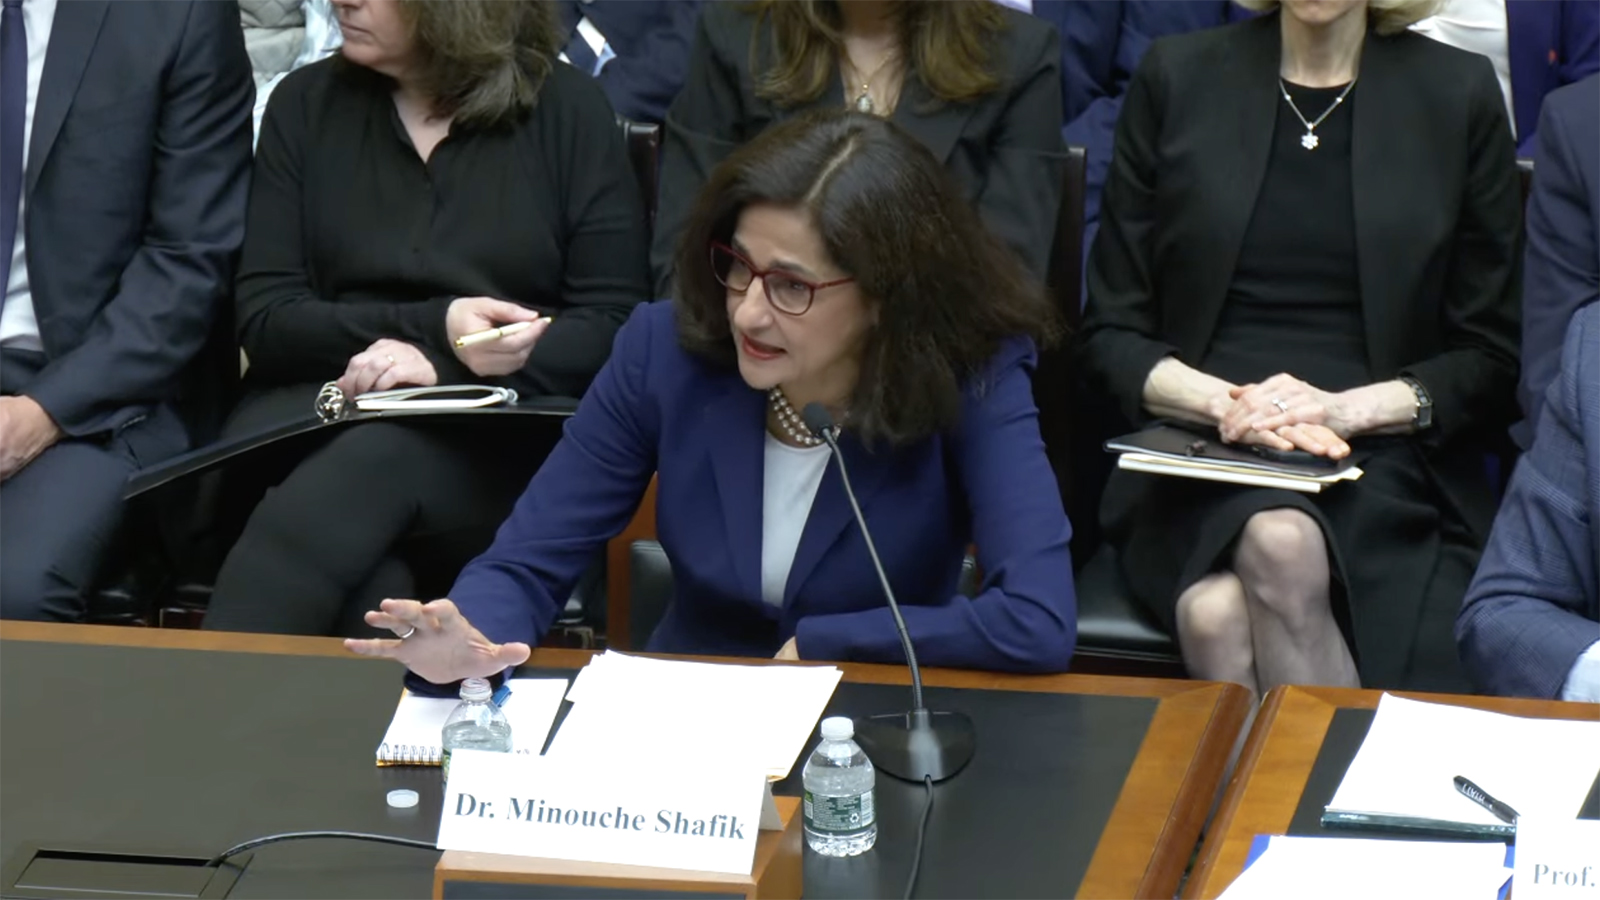 Minouche Shafik, Präsidentin der Columbia University, während ihrer Eröffnungsrede bei einer Anhörung des Ausschusses für Bildung und Arbeitskräfte des Repräsentantenhauses über Antisemitismus auf dem Universitätsgelände heute in Washington, D.C.